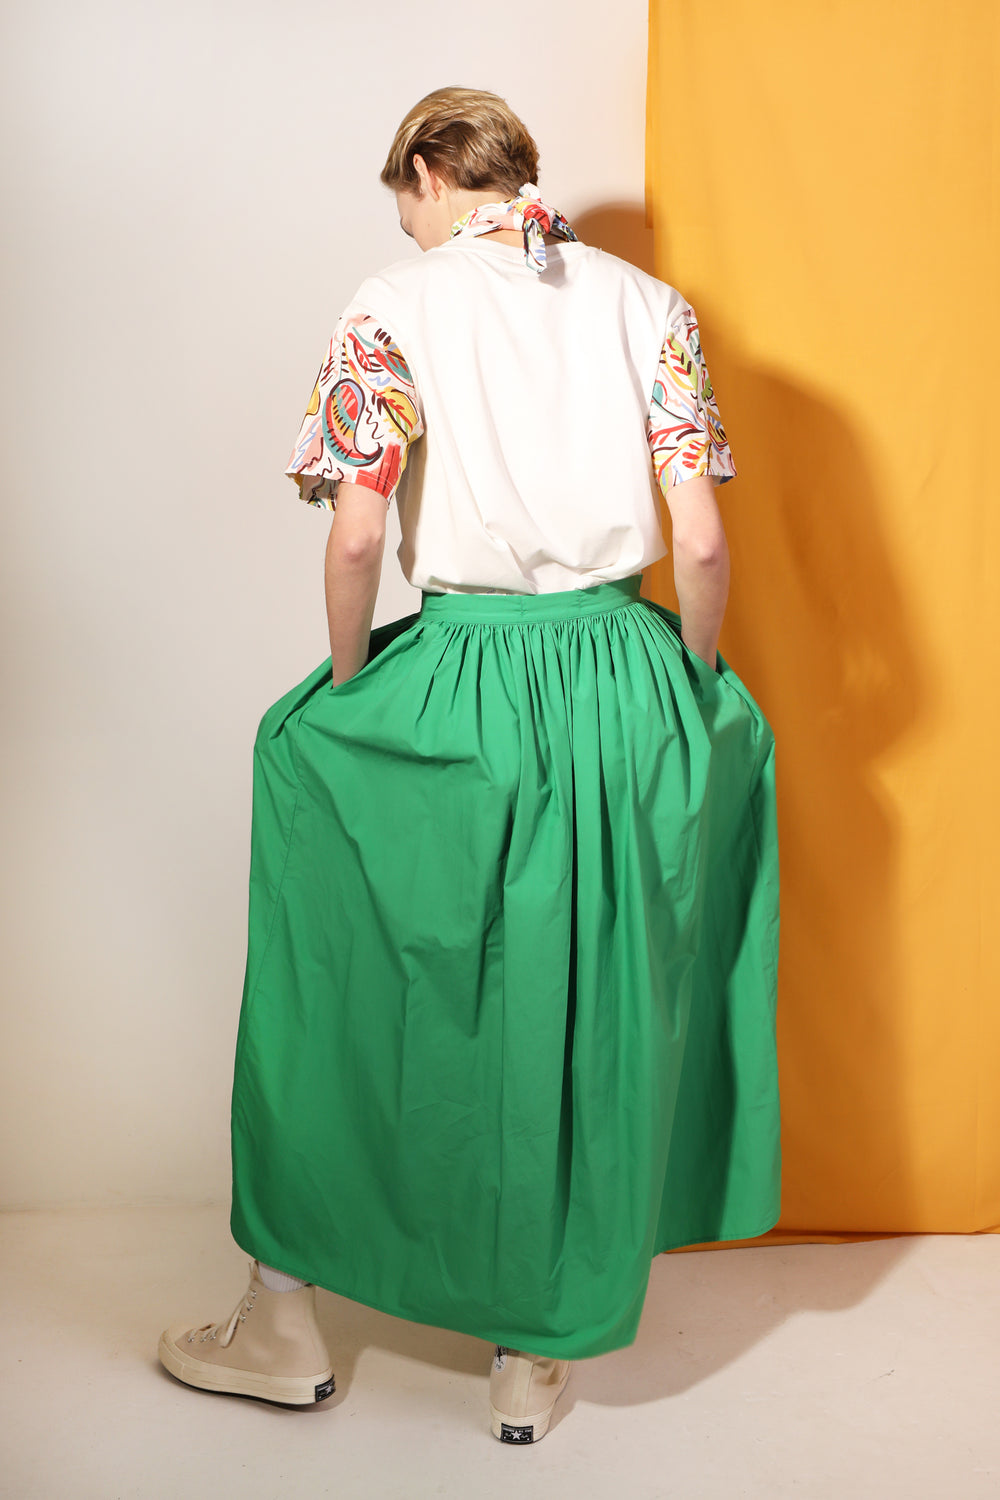 L F Markey Verde Isaac Skirt